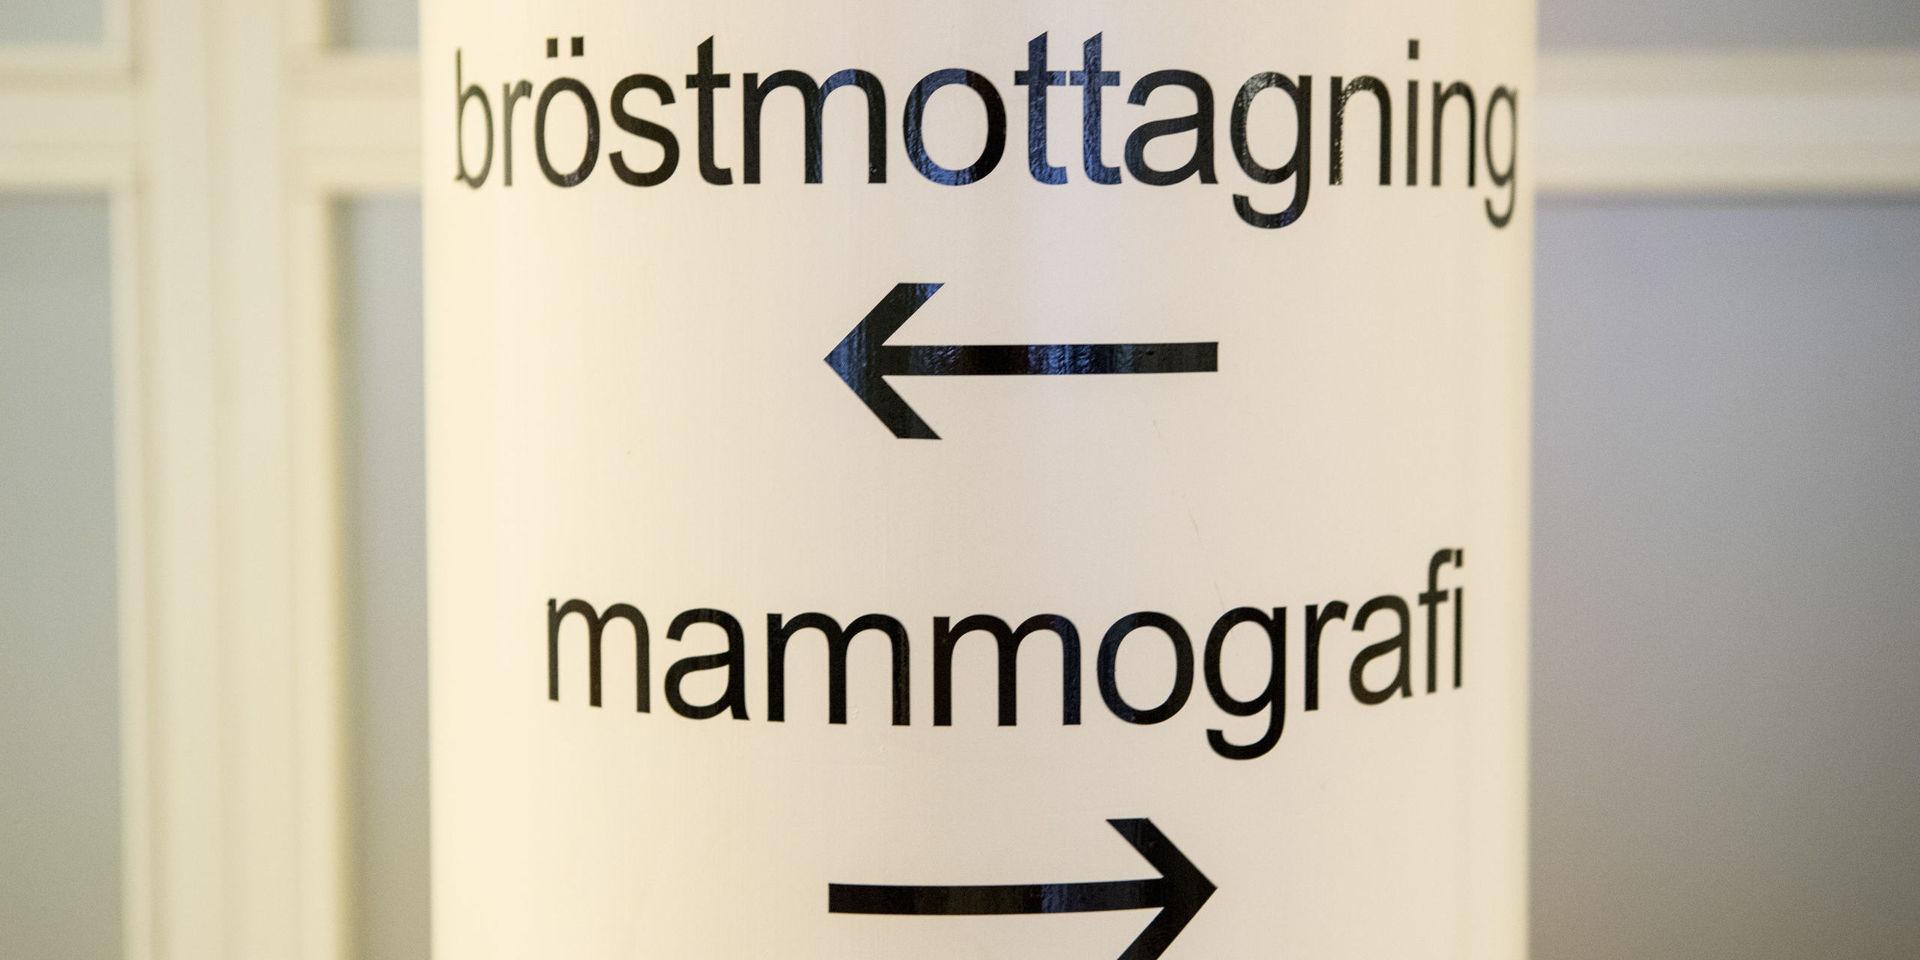 Varför envisas man i Sverige att säga att mammografi är något positivt, undrar insändarskribenten.